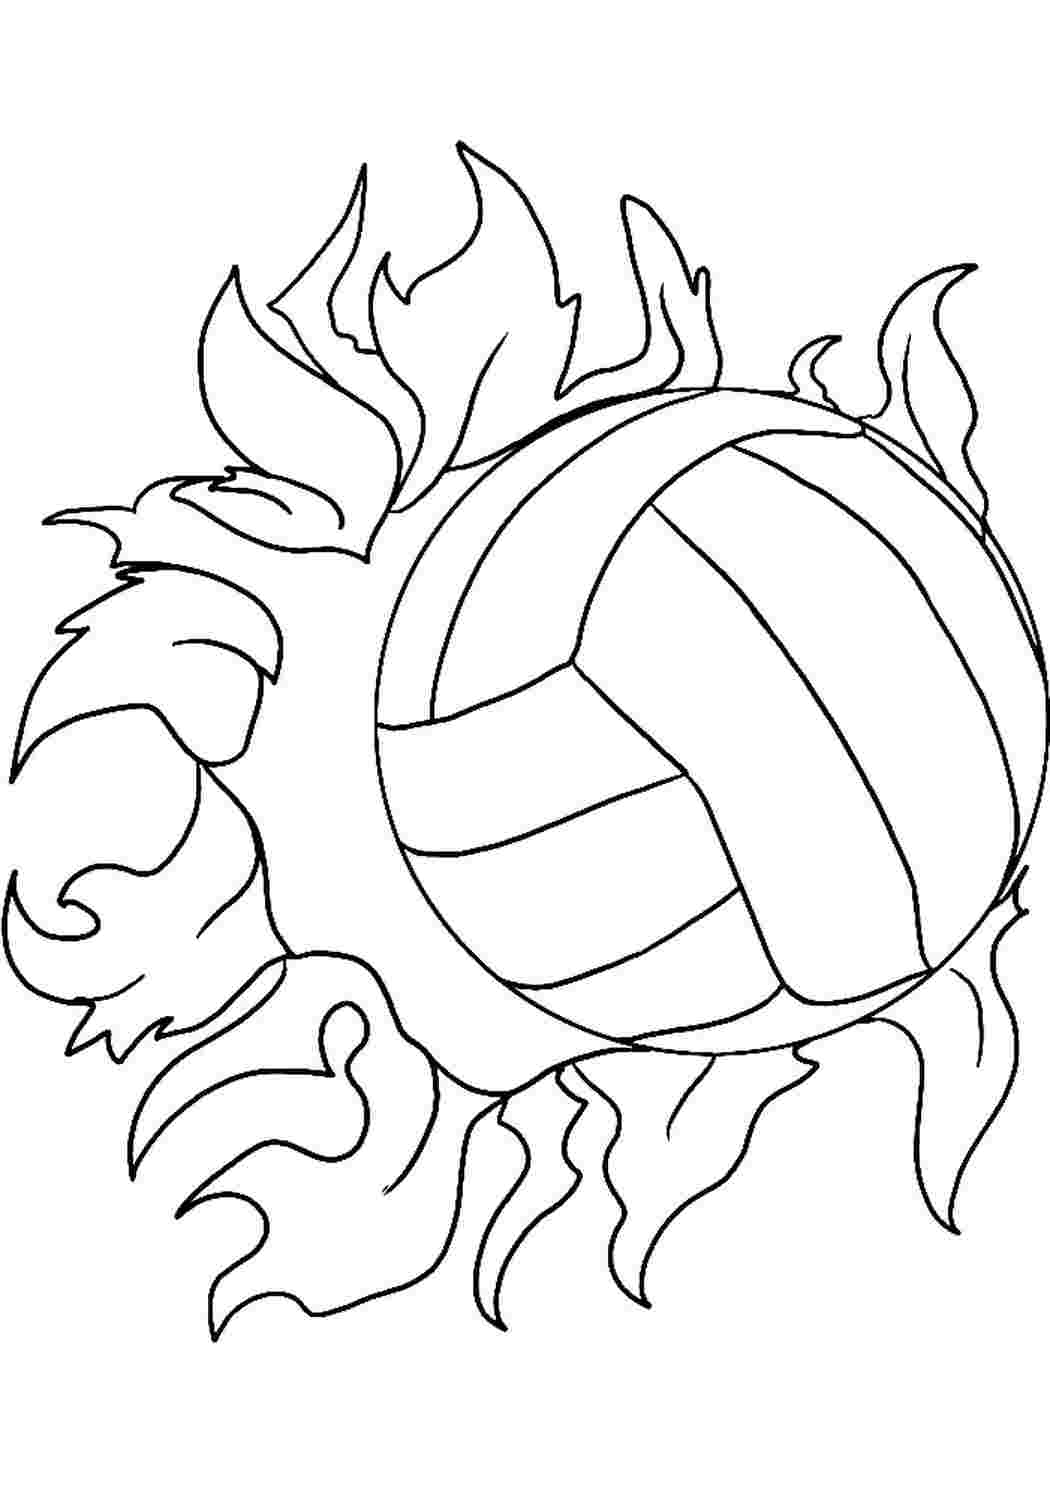 Волейбольный мяч раскраска